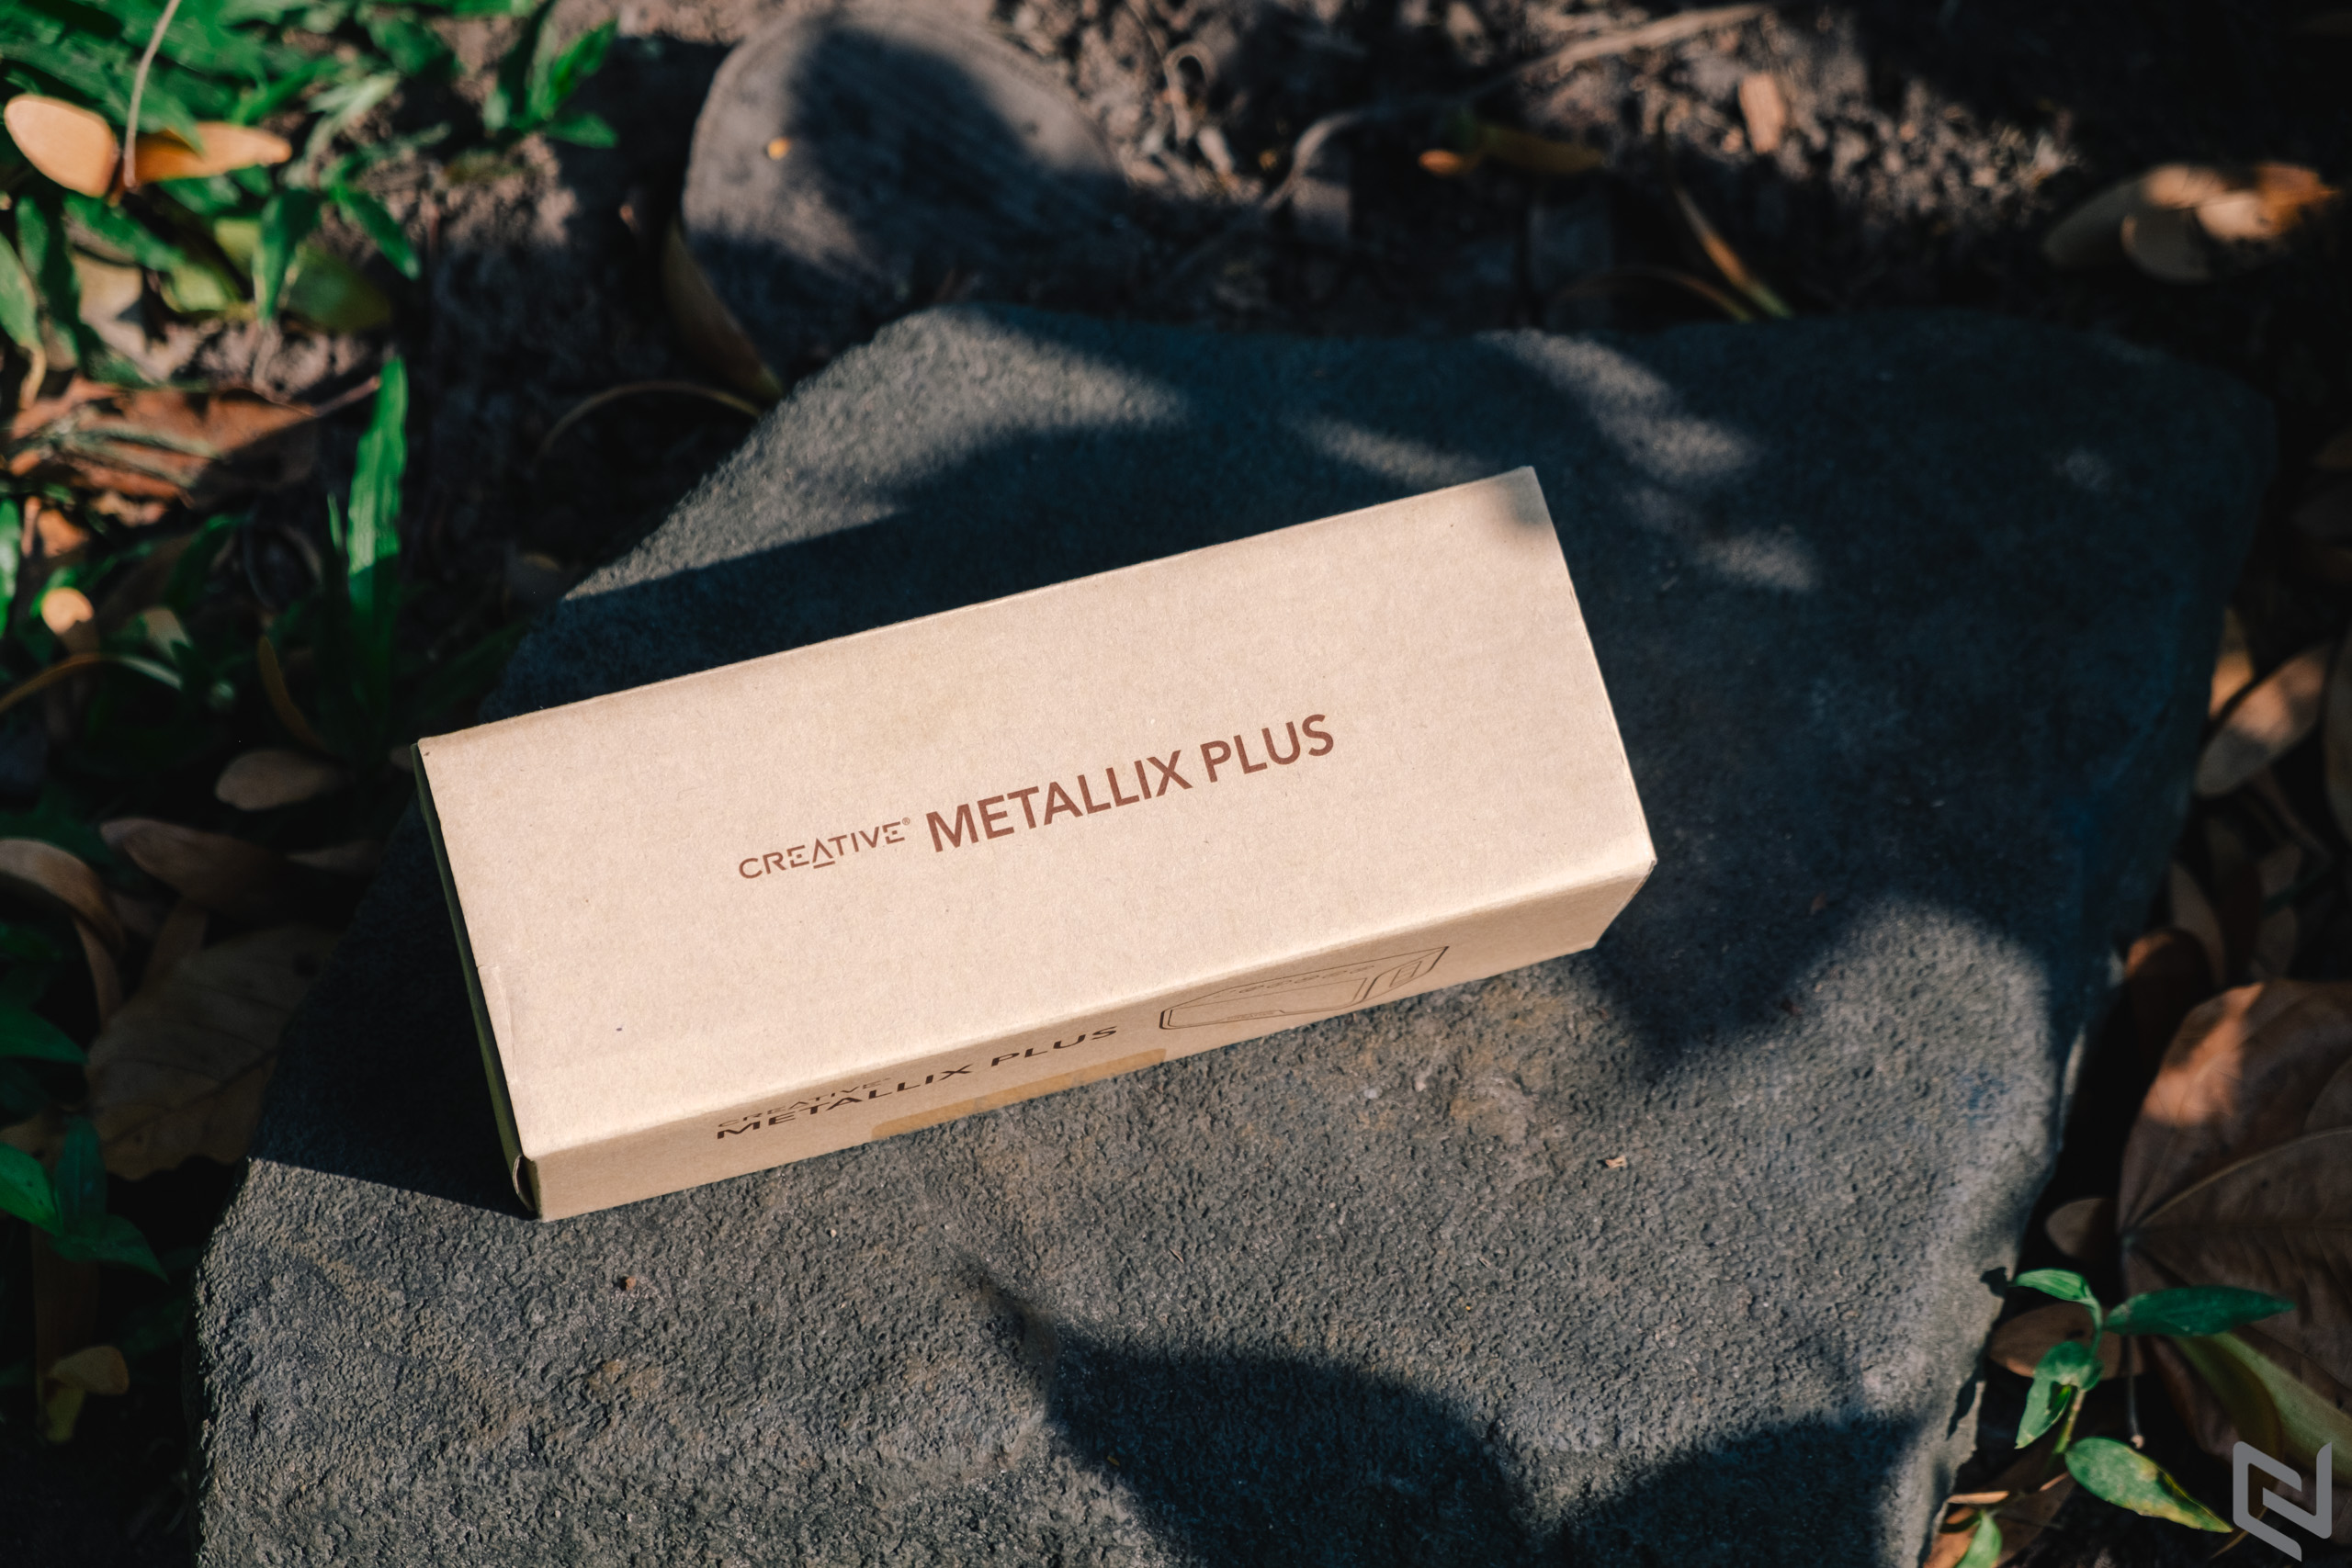 Đánh giá loa bluetooth Creative Metallix Plus: Nhỏ gọn nhưng mạnh mẽ, thời lượng pin khủng